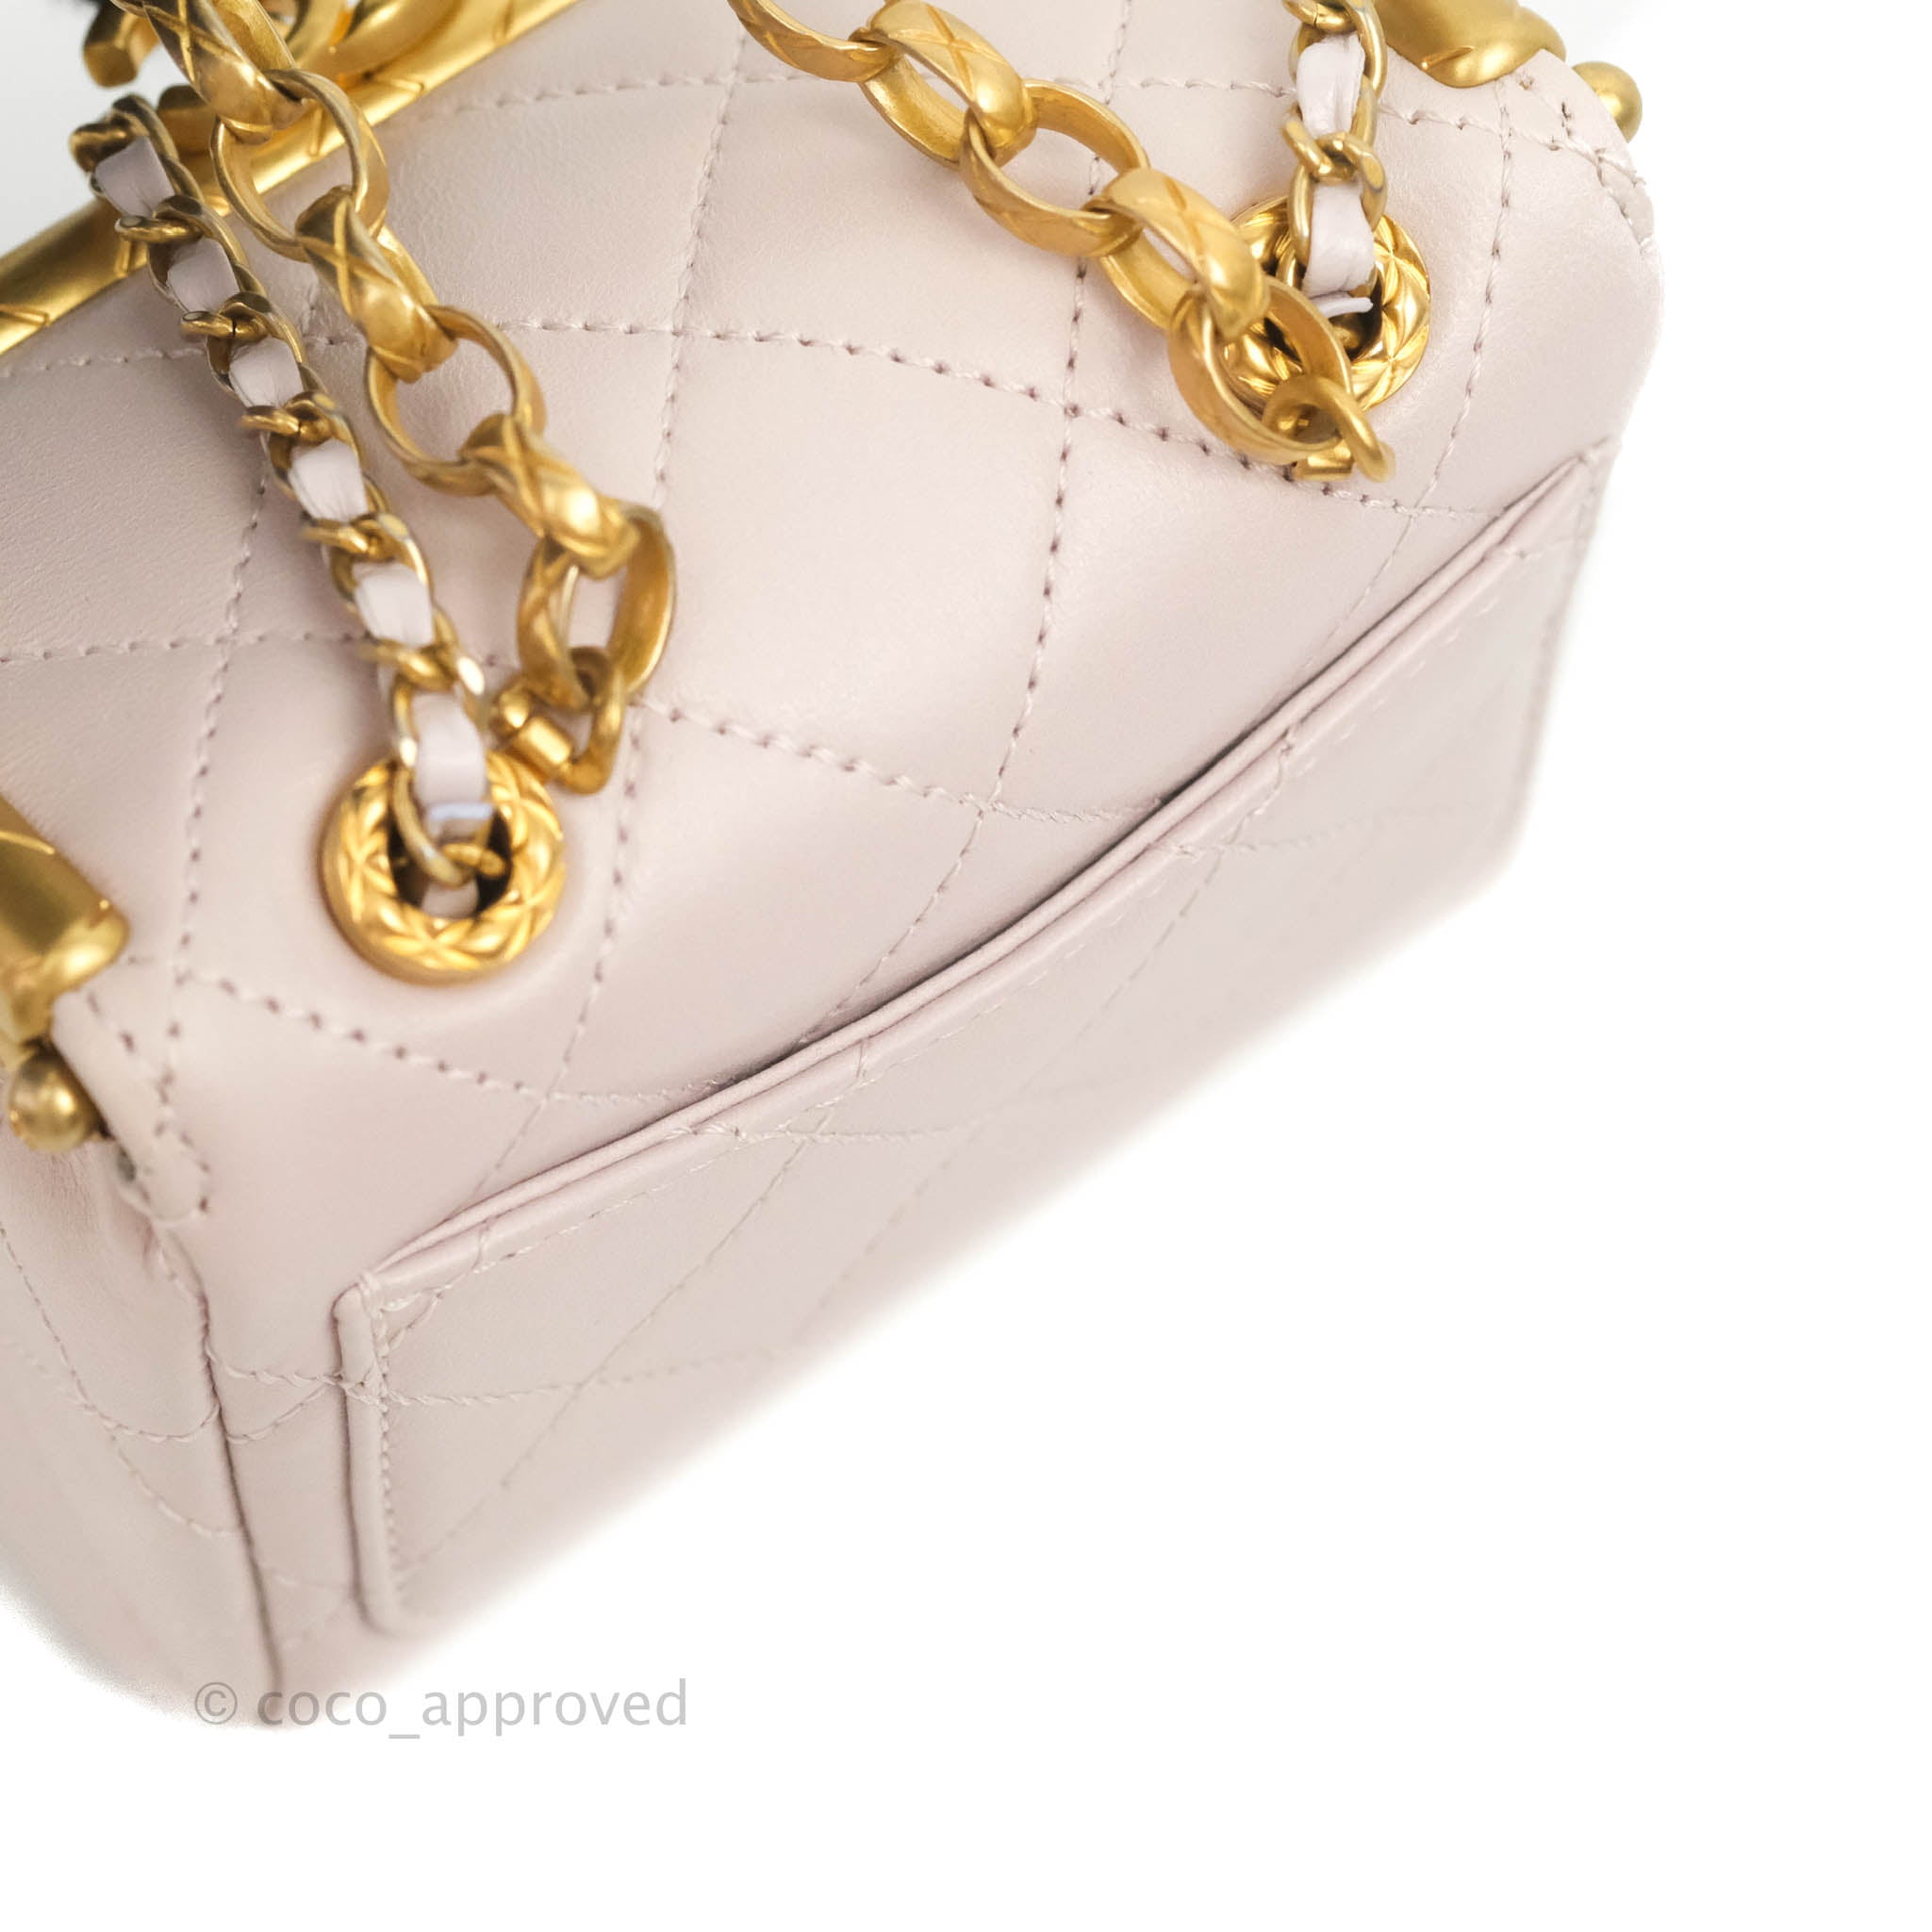 Chanel Metallic Gold Quilted Lambskin Kiss Lock Whipstitch Mini  Q6AGAN4NDB000